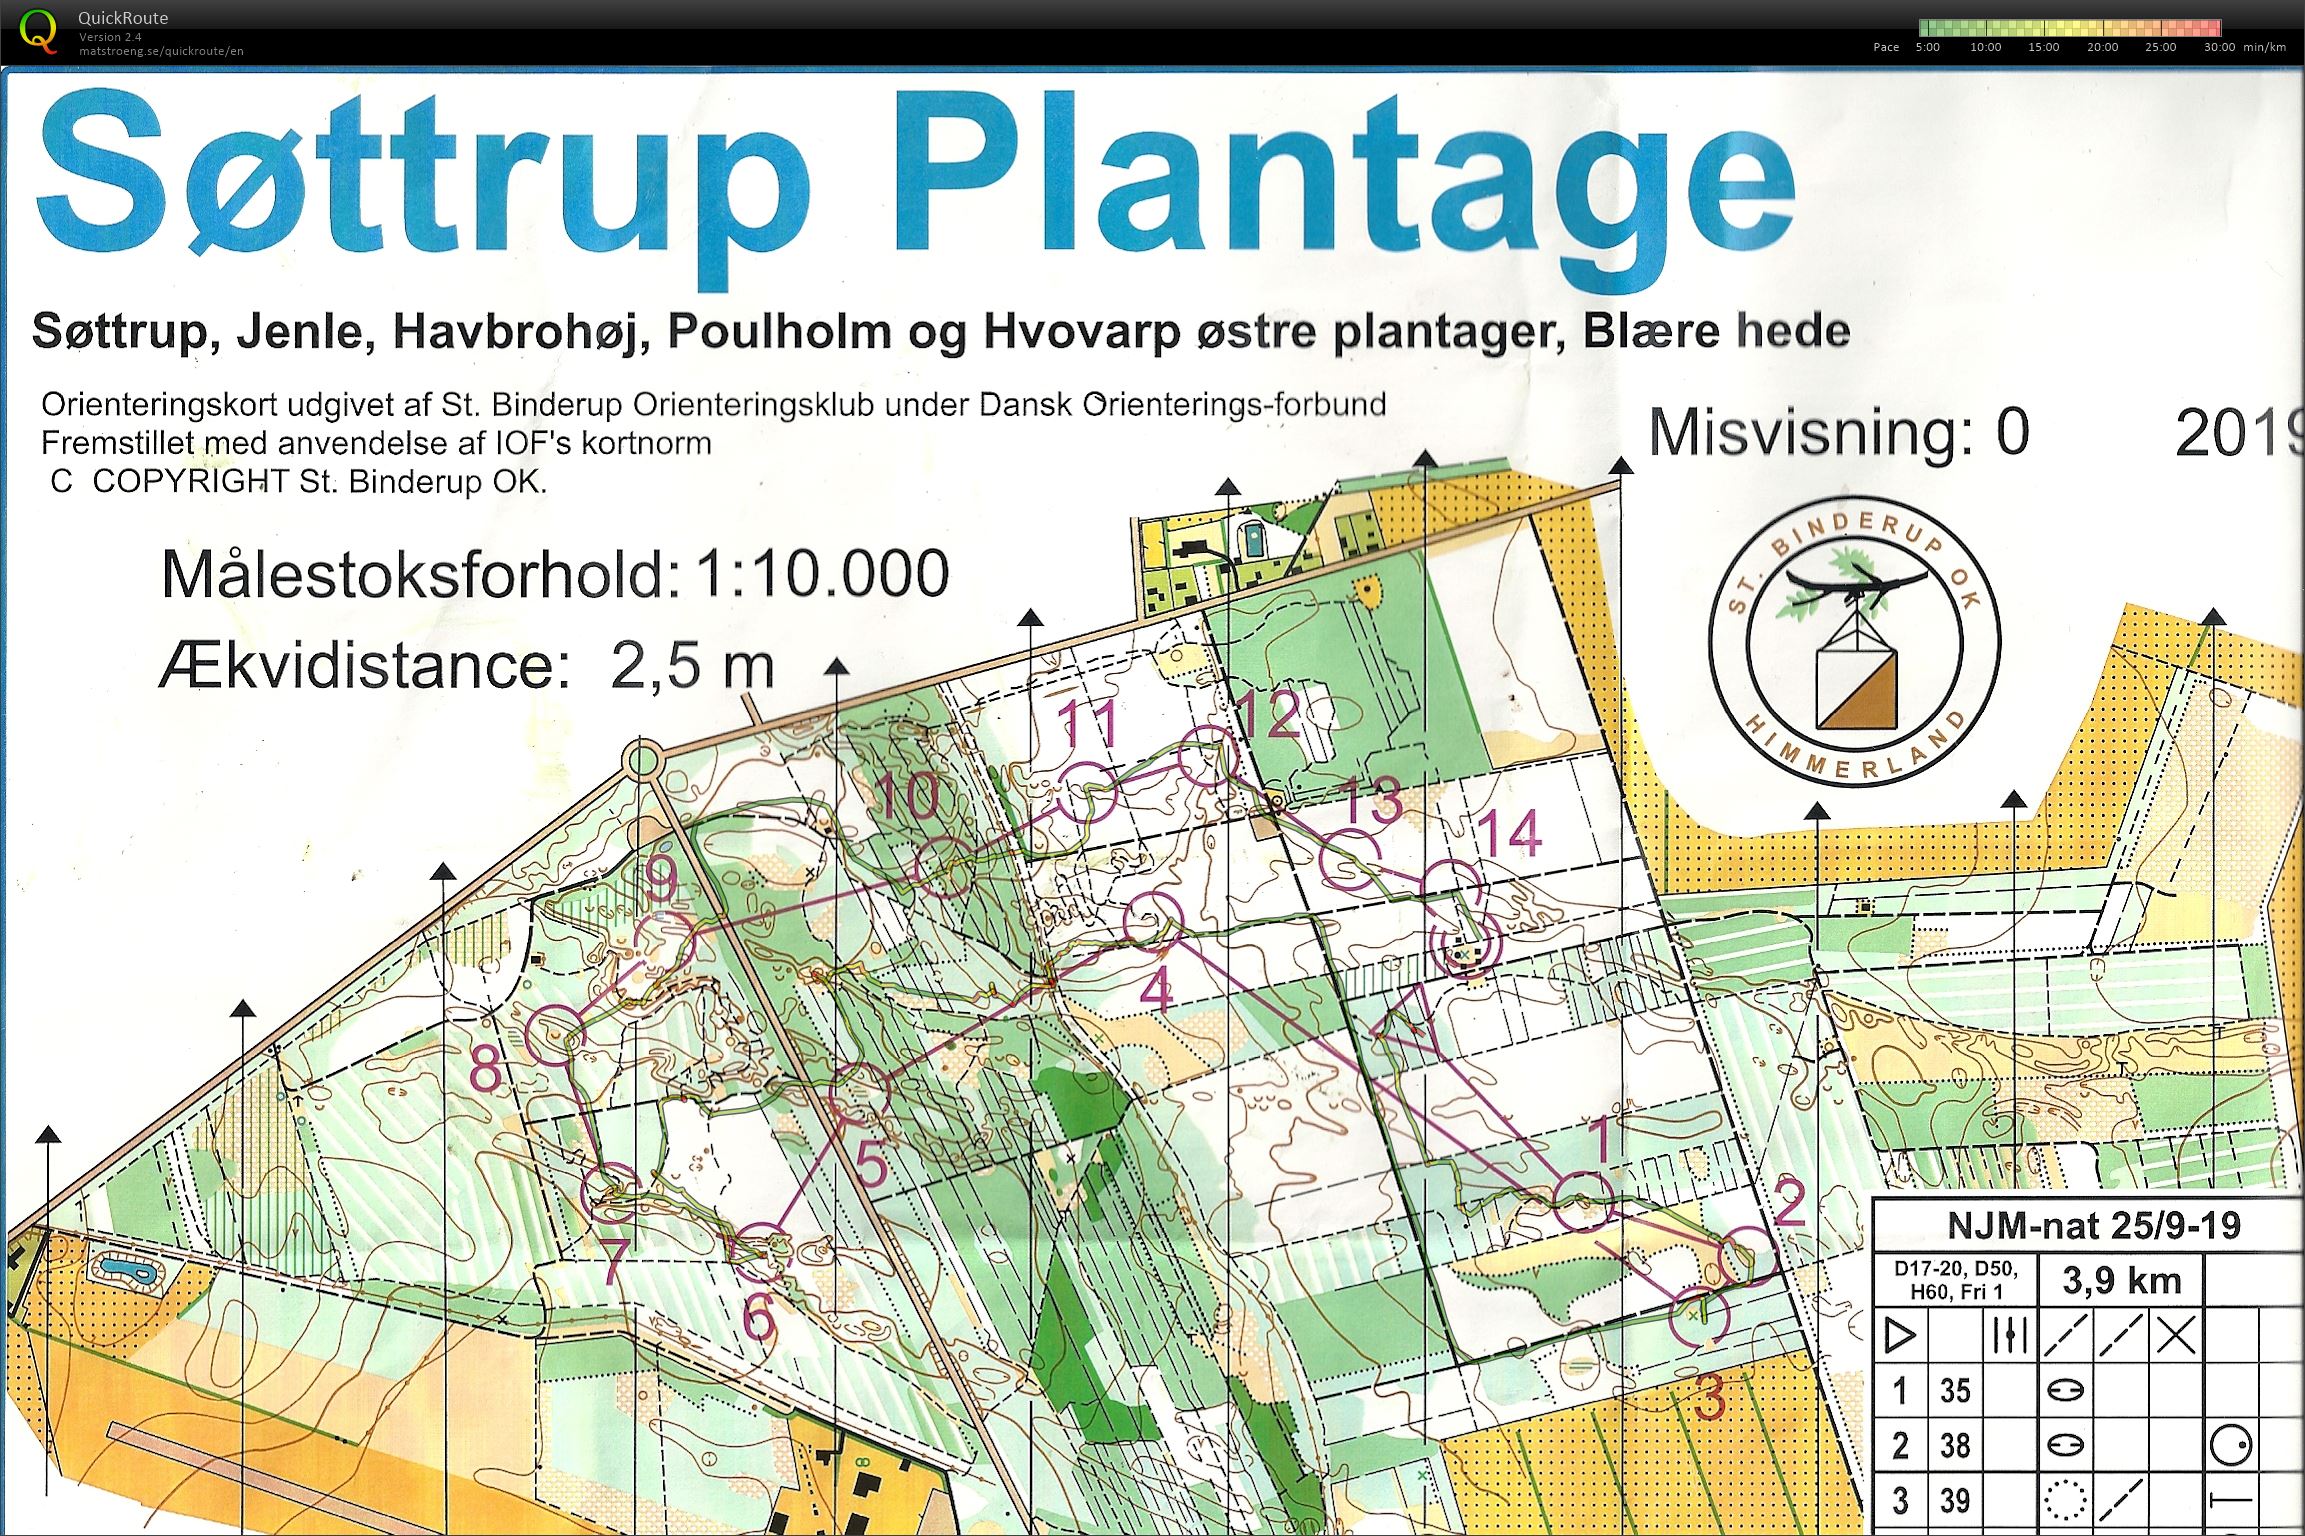 Søttrup Plantage, NJM Nat. Bane D50. (25/09/2019)